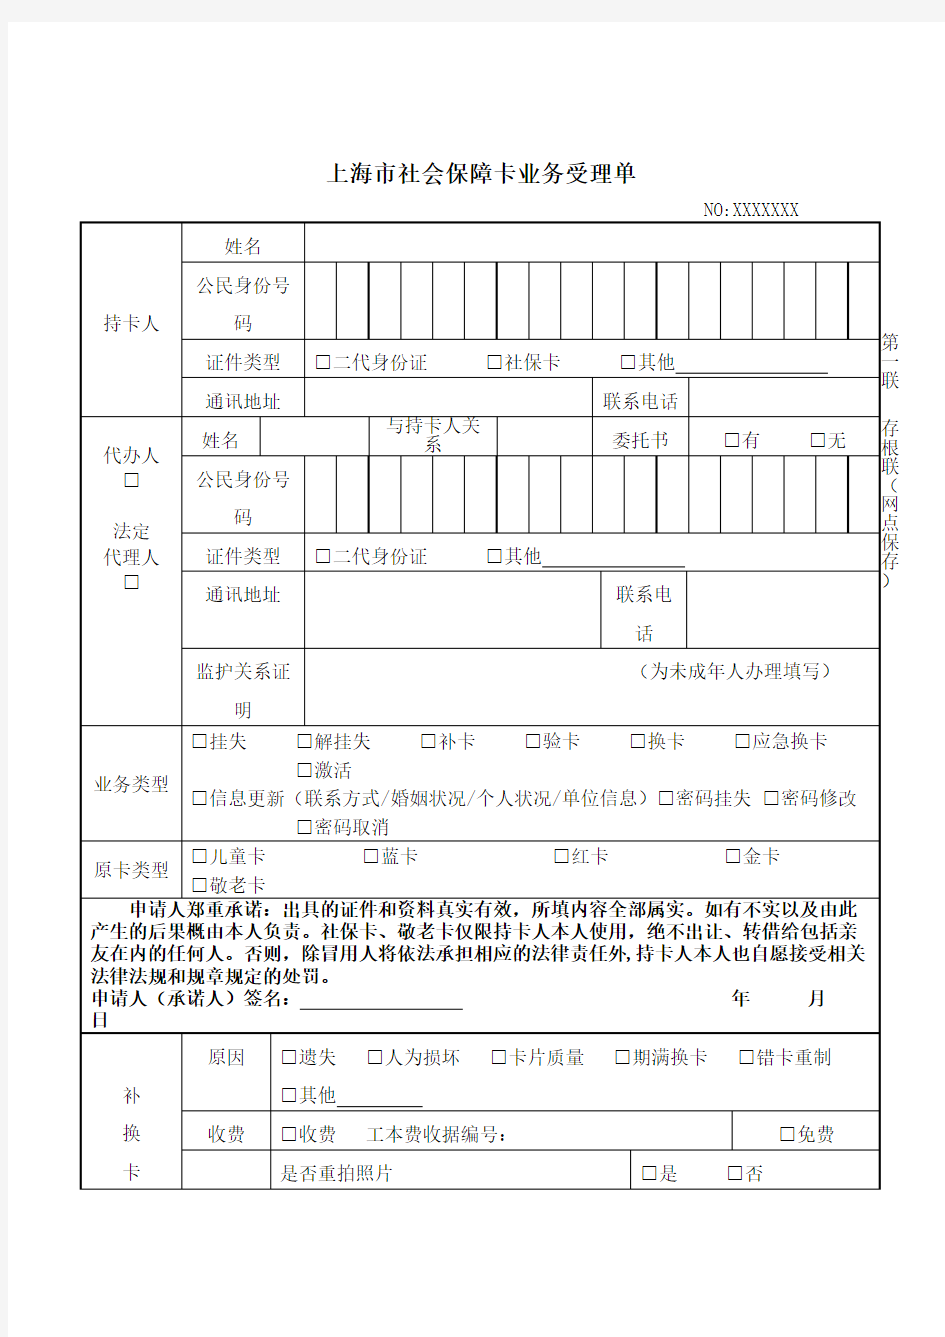 上海市社会保障卡申领登记表